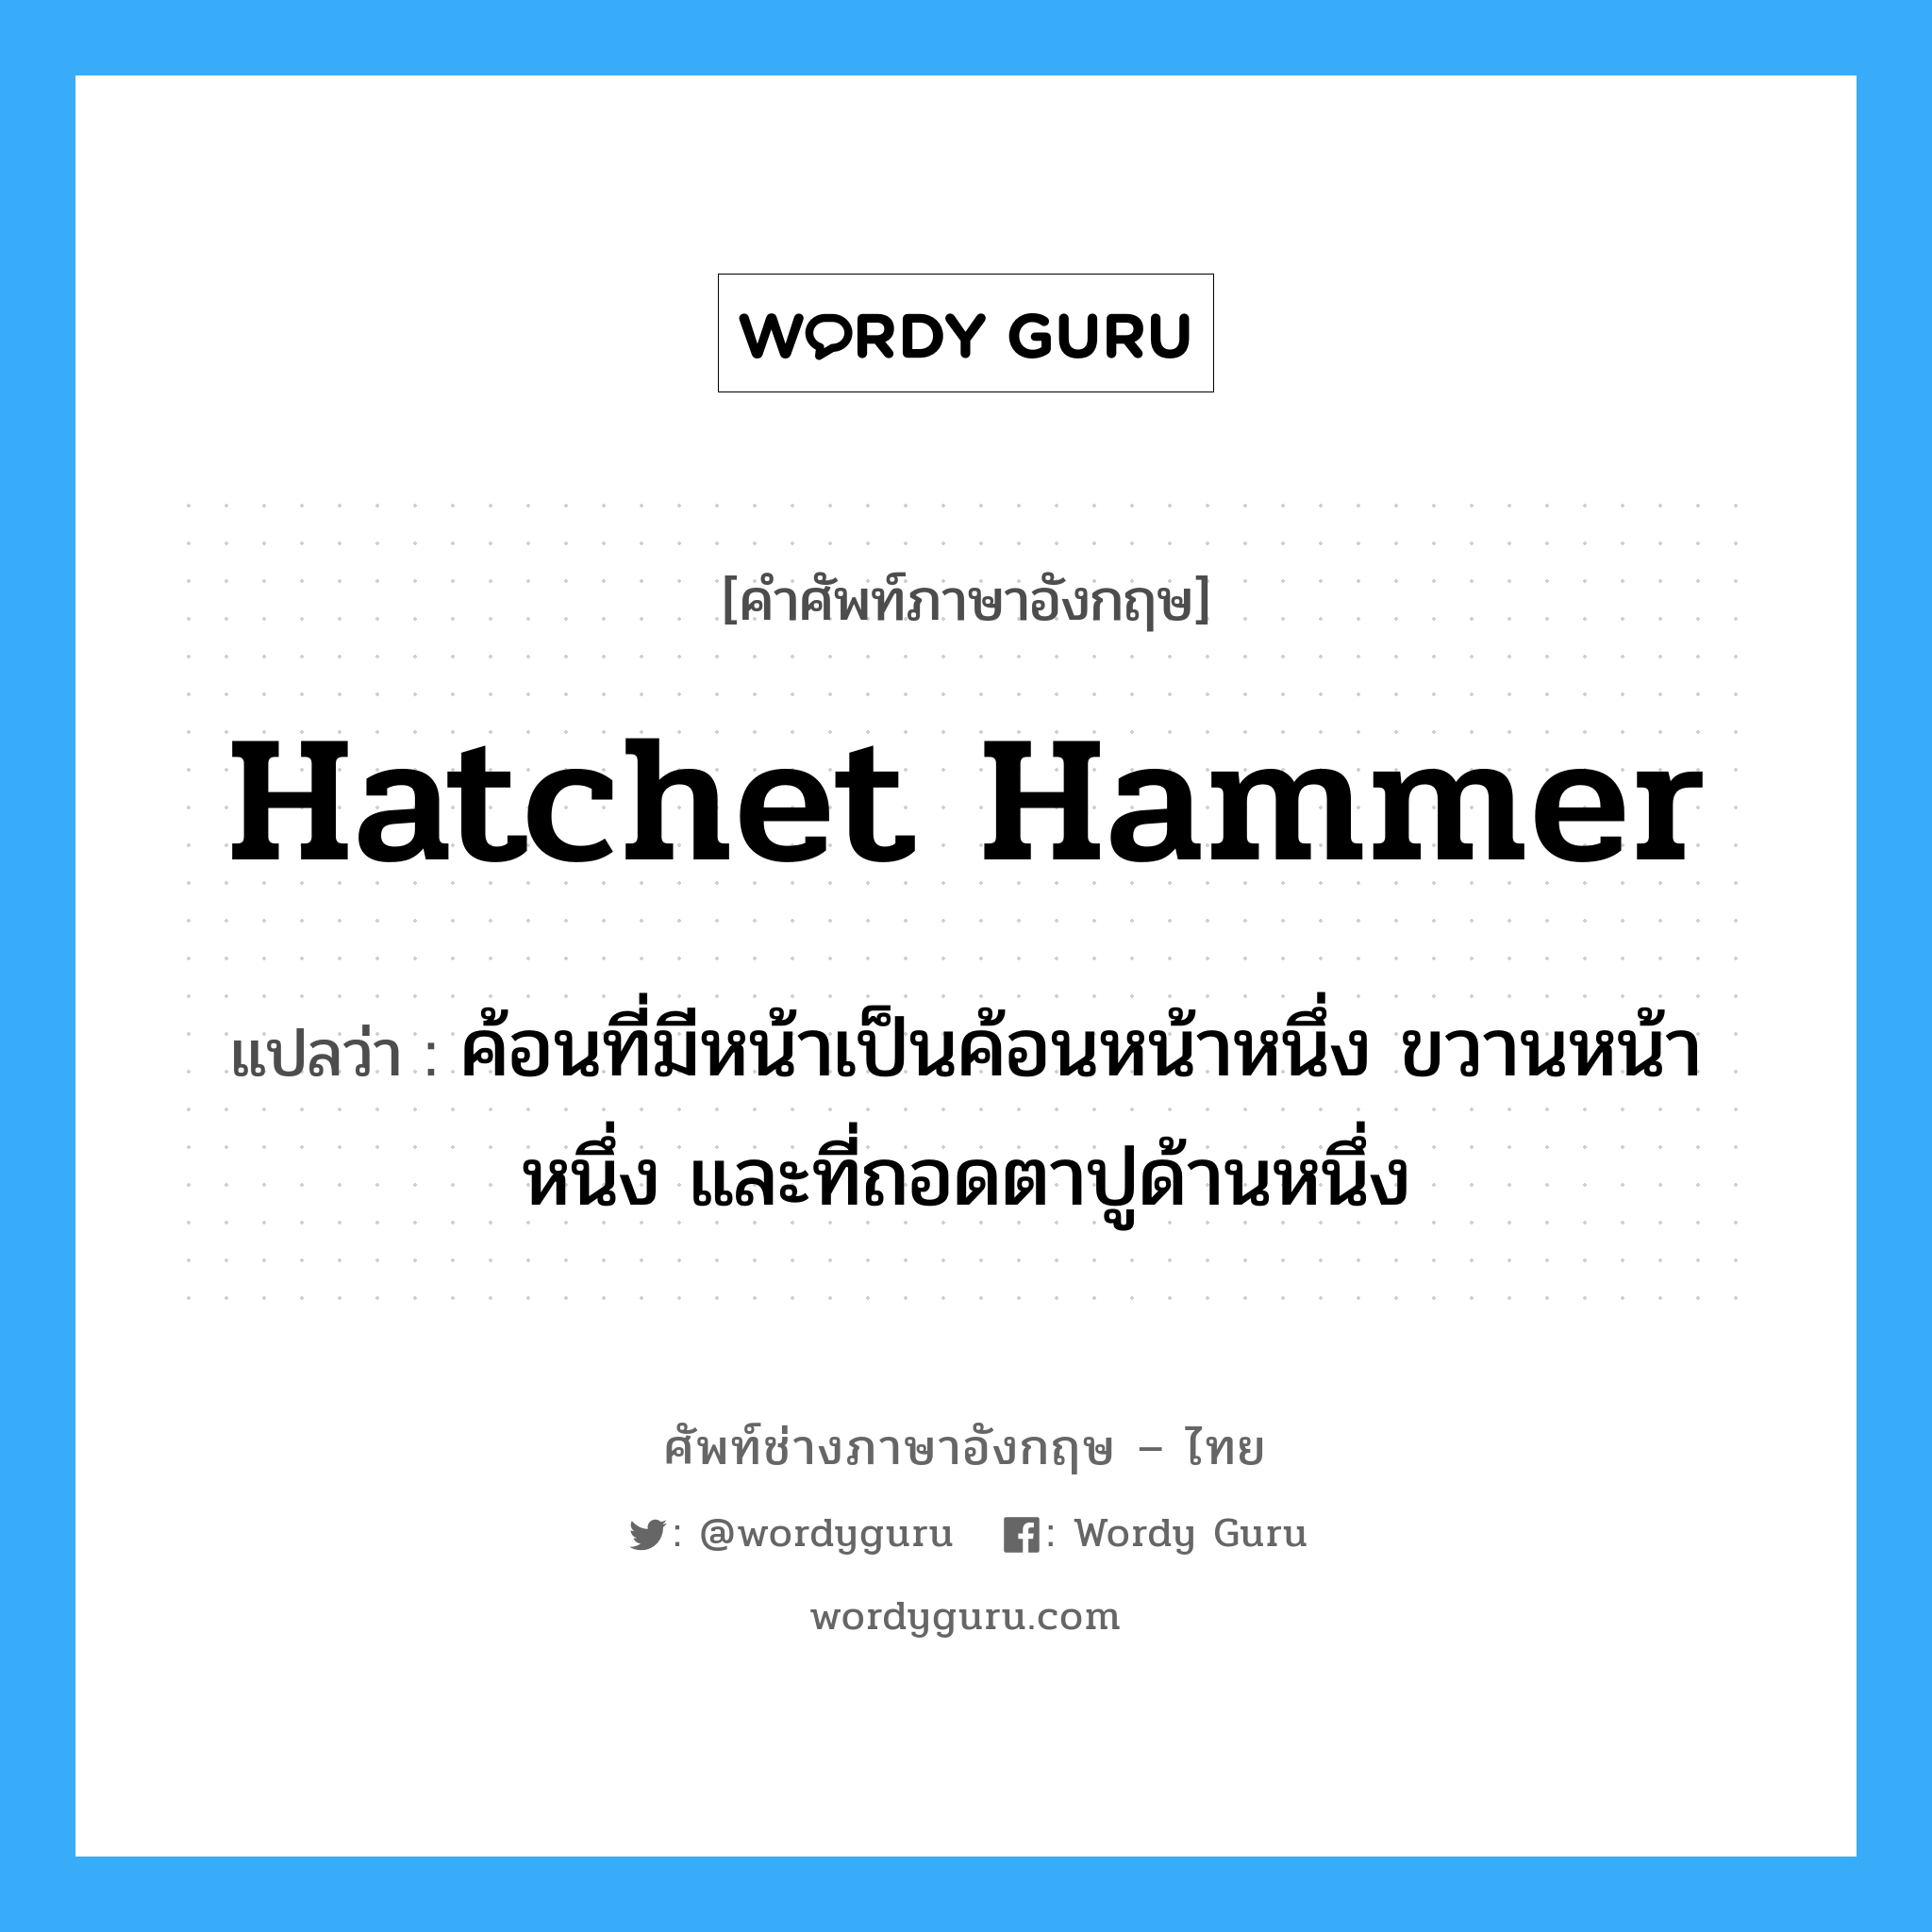 hatchet hammer แปลว่า?, คำศัพท์ช่างภาษาอังกฤษ - ไทย hatchet hammer คำศัพท์ภาษาอังกฤษ hatchet hammer แปลว่า ค้อนที่มีหน้าเป็นค้อนหน้าหนึ่ง ขวานหน้าหนึ่ง และที่ถอดตาปูด้านหนึ่ง